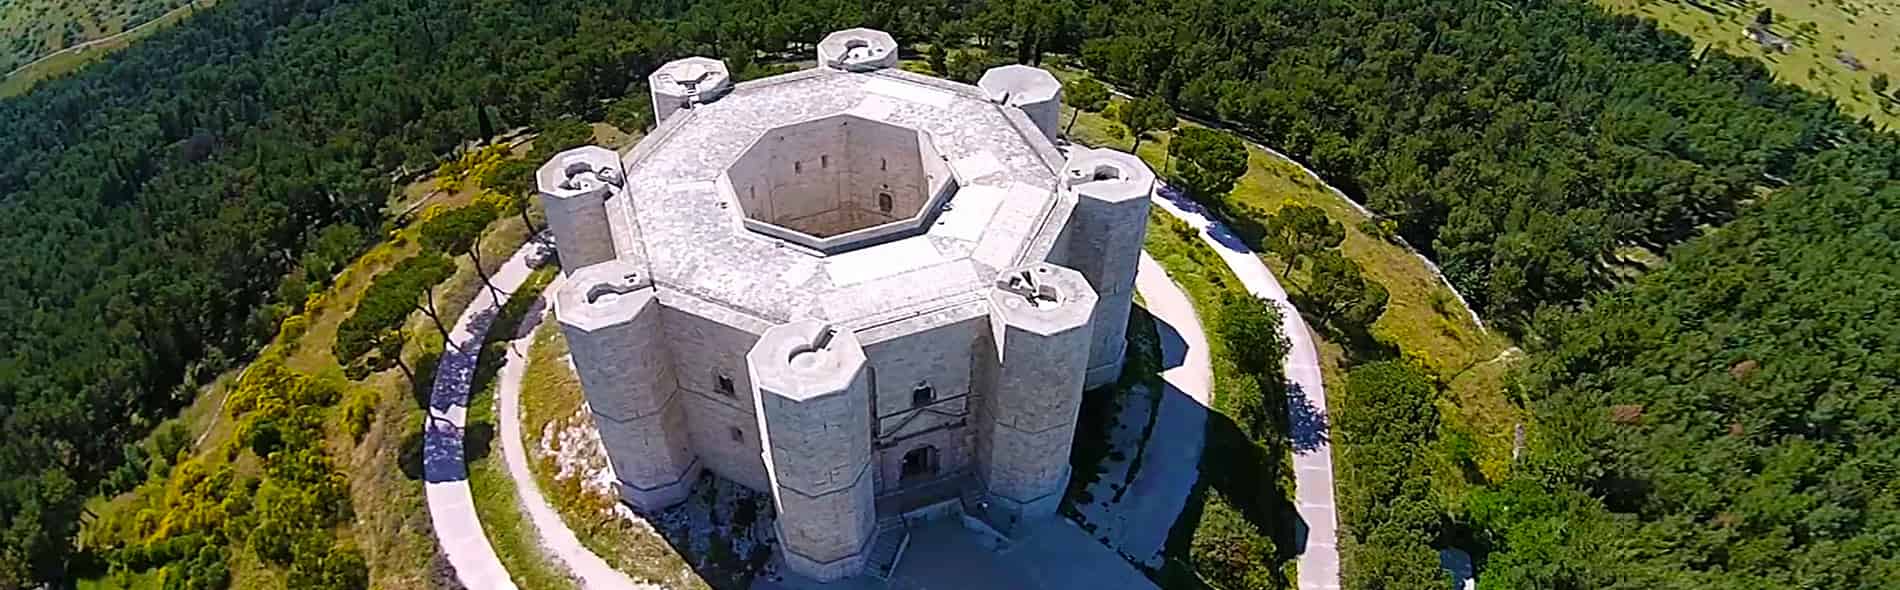 Castel del Monte guided tour